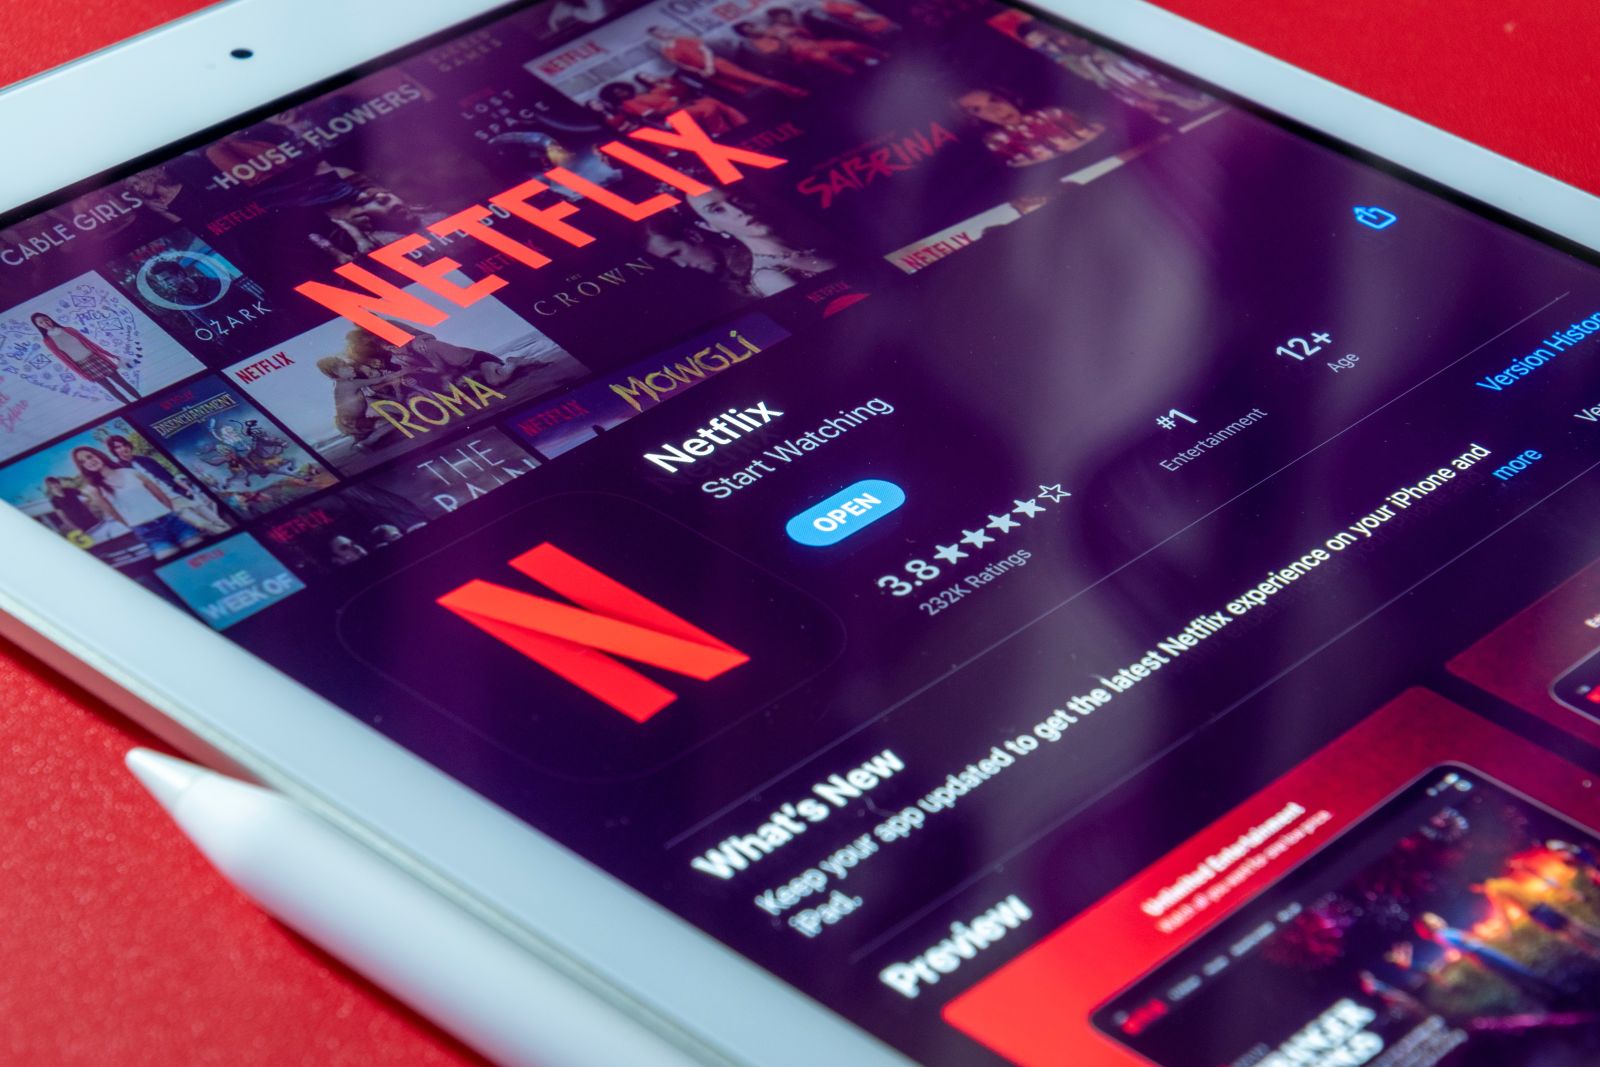 Tech (Ecommerce, Social Media, etc.) - Netflix open on Tablet